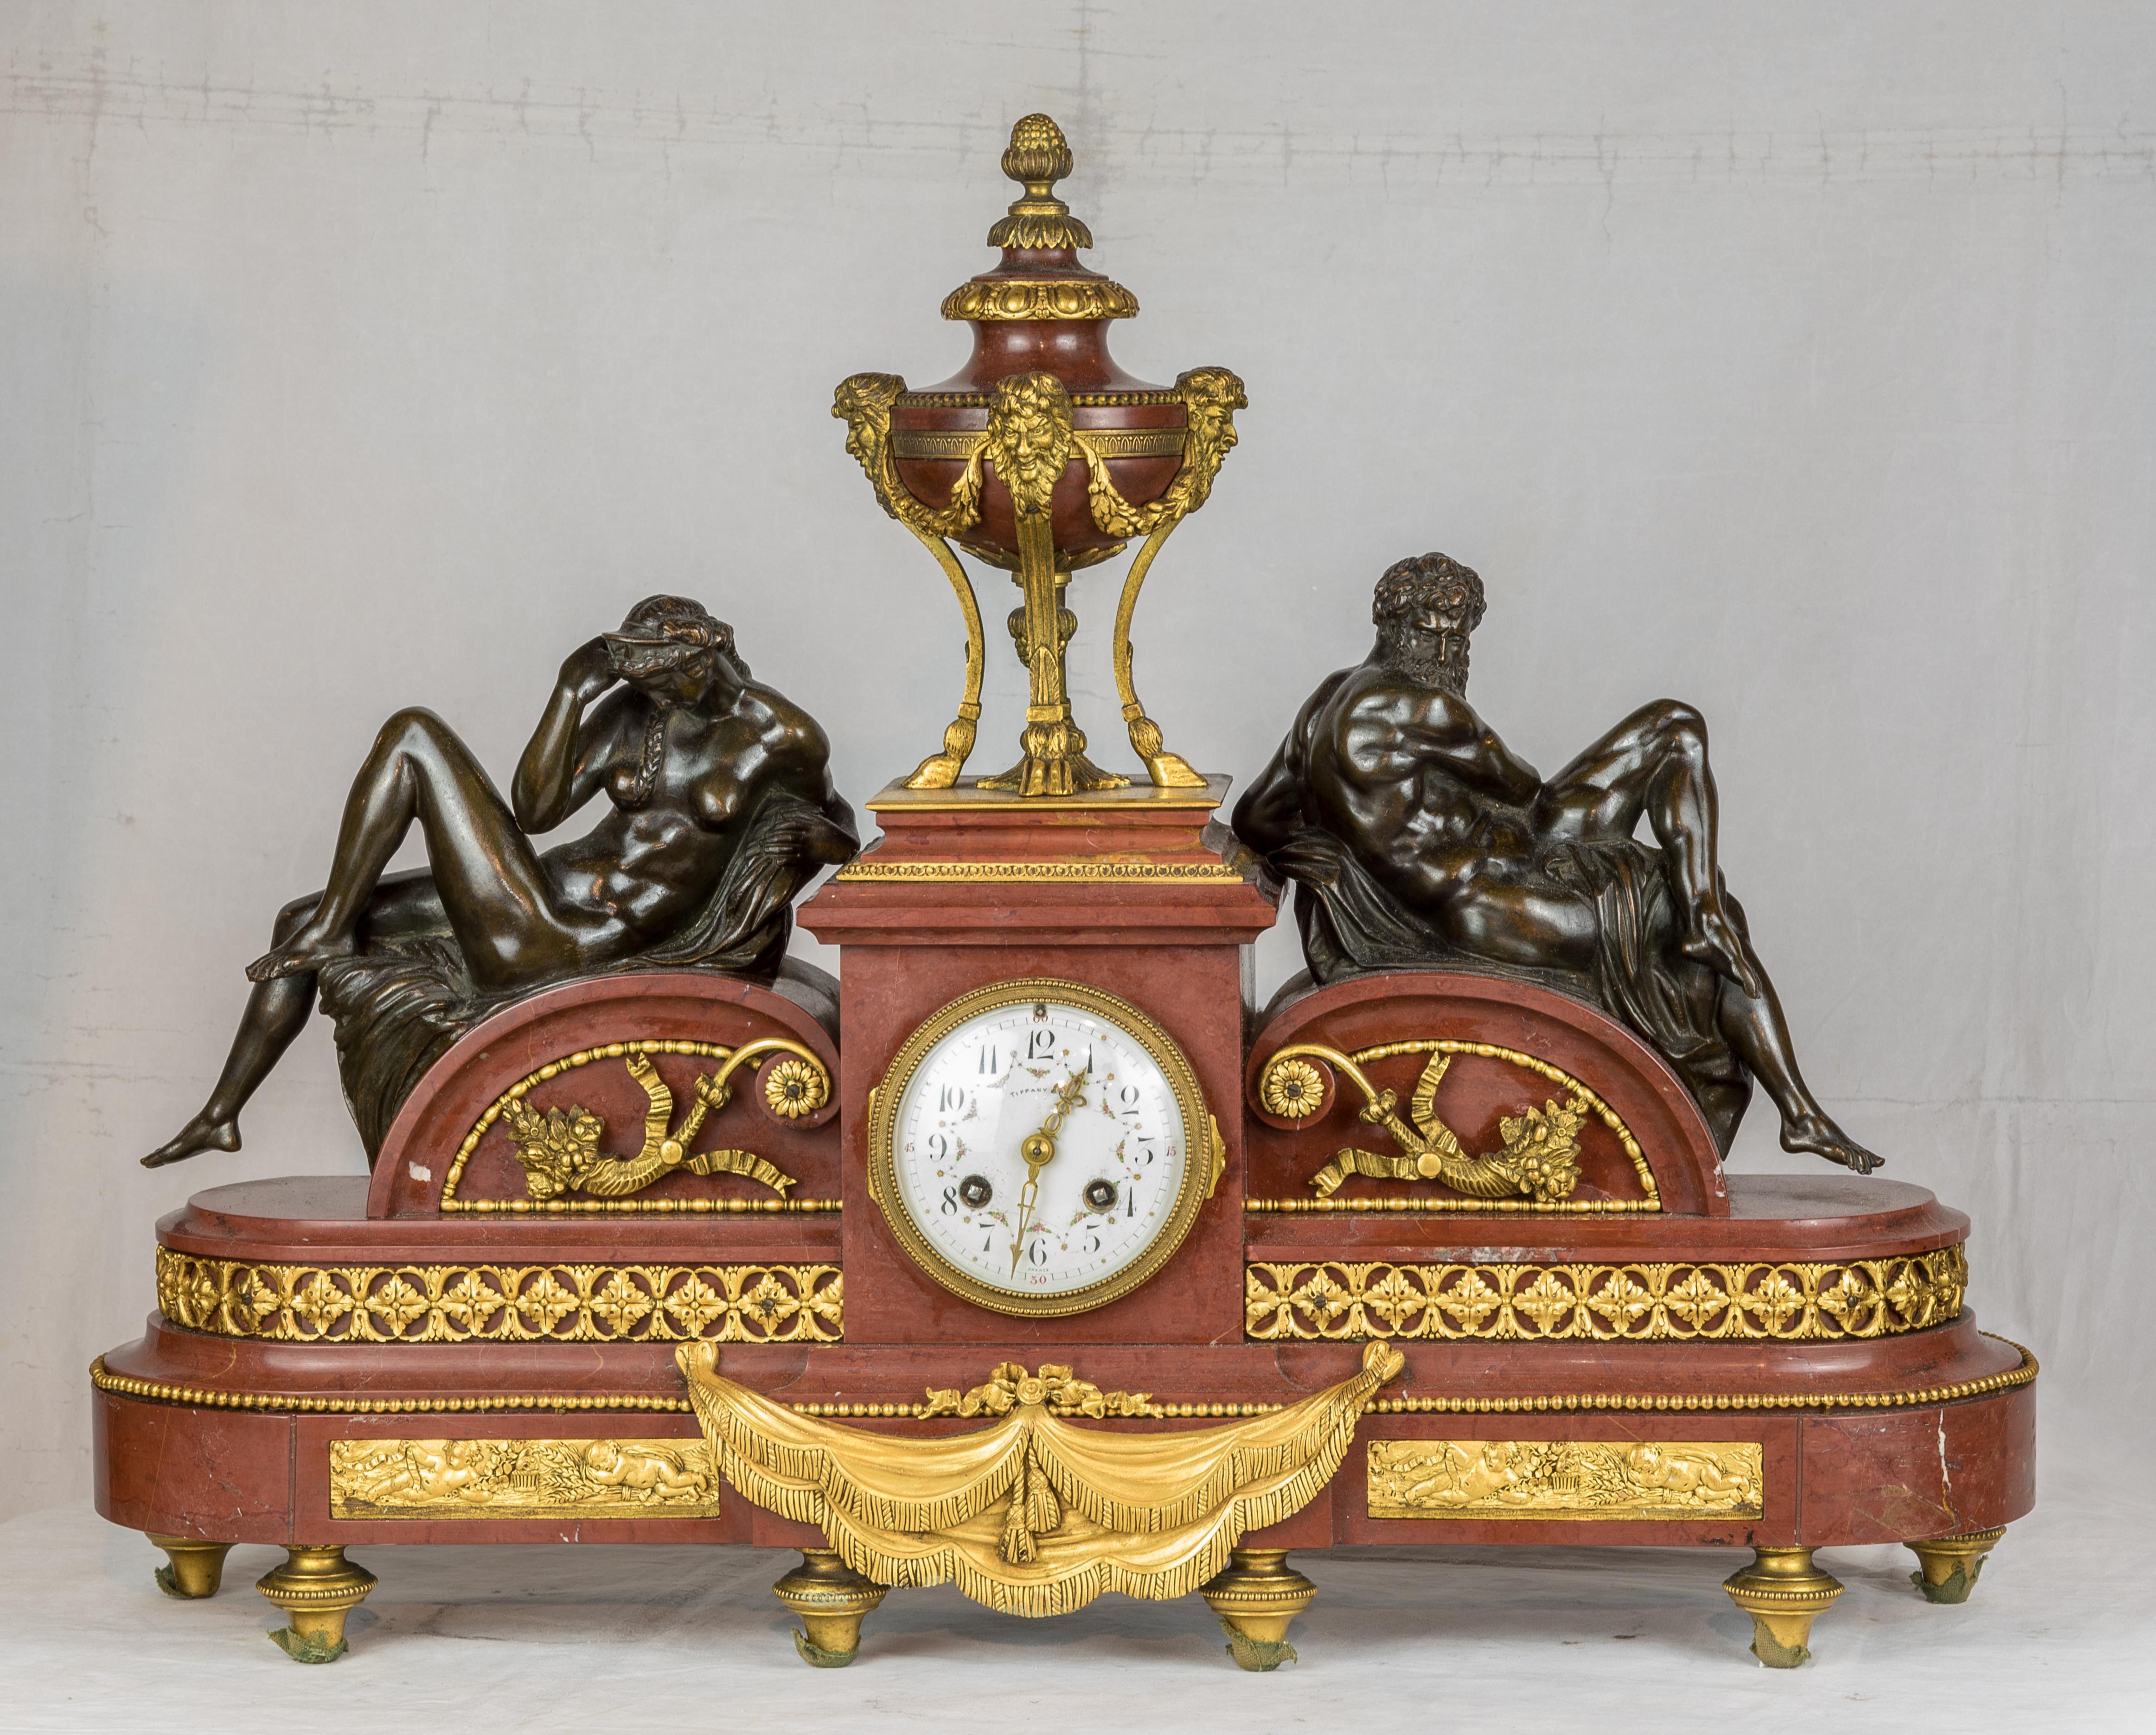 Pendule de cheminée en bronze doré et marbre rouge de Tiffany & Co. avec des figures de nuit et de jour

Fabricant : Tiffany & Co. (Américain, 1837-)
Date : Circa 1890
Dimension : 18 in. x 24 in.